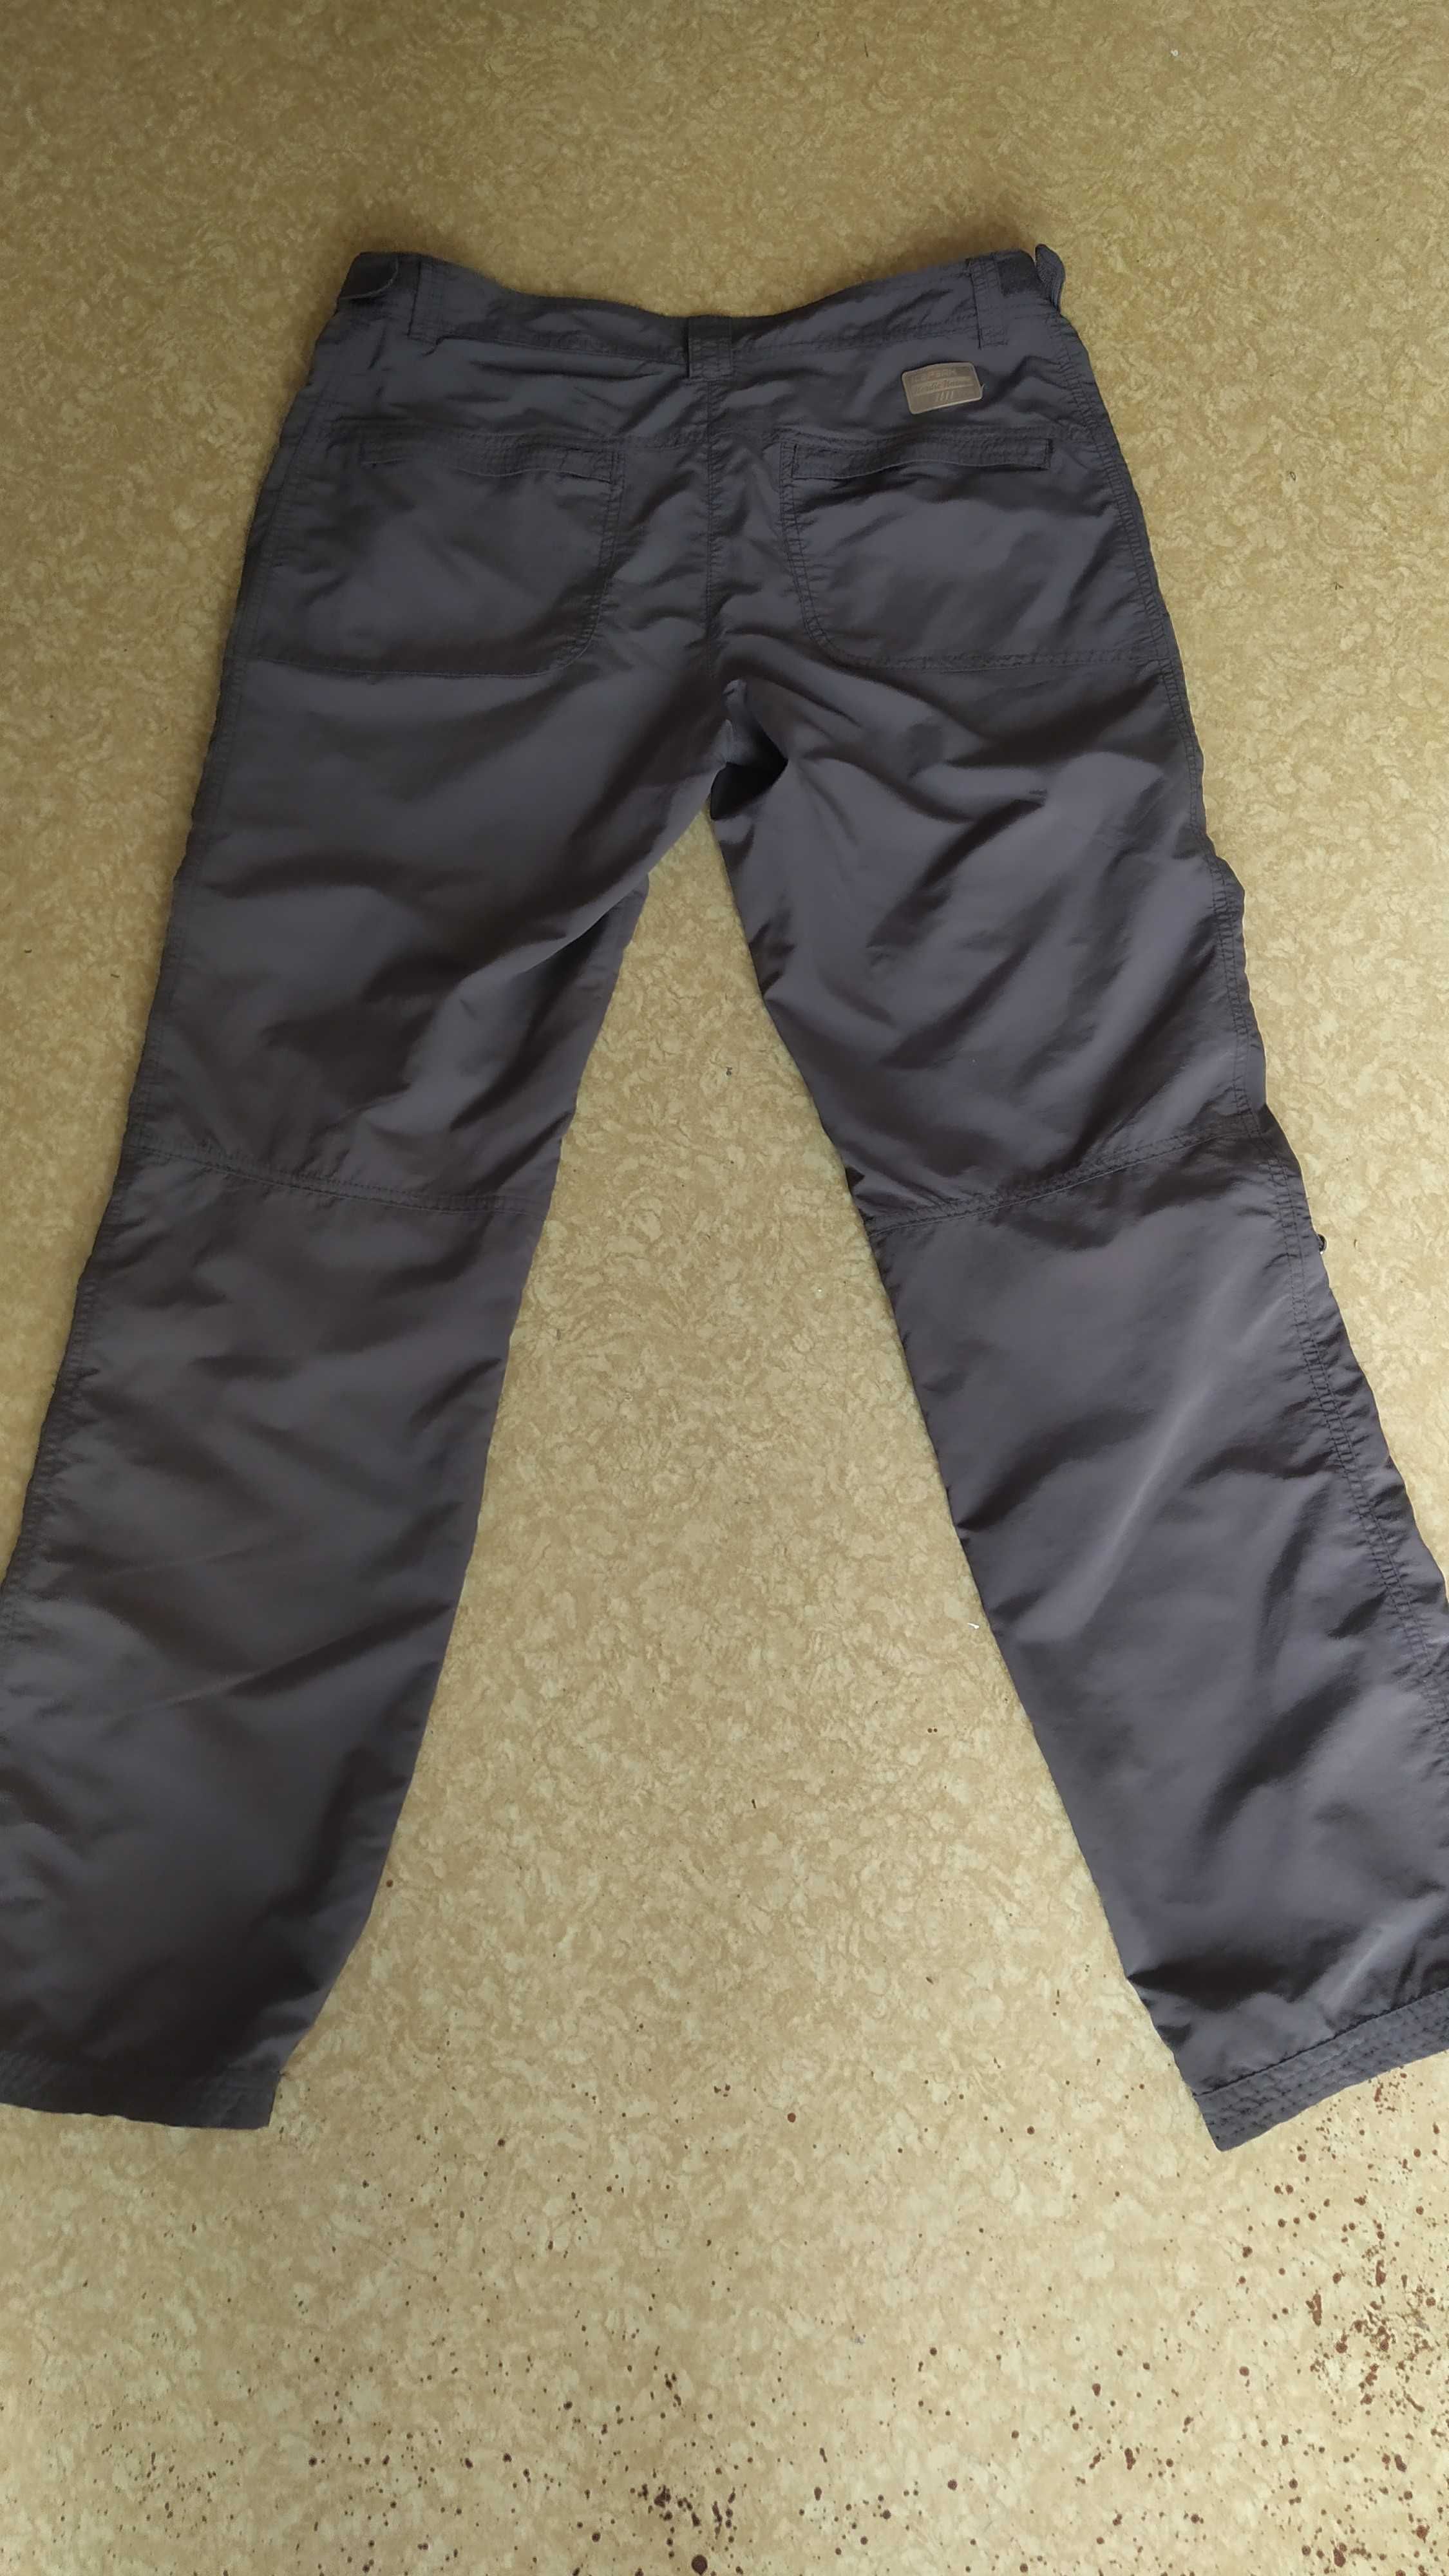 Icepeak,spodnie górskie,trekkingowe,turystyczne,damskie,42/XL,+bdb